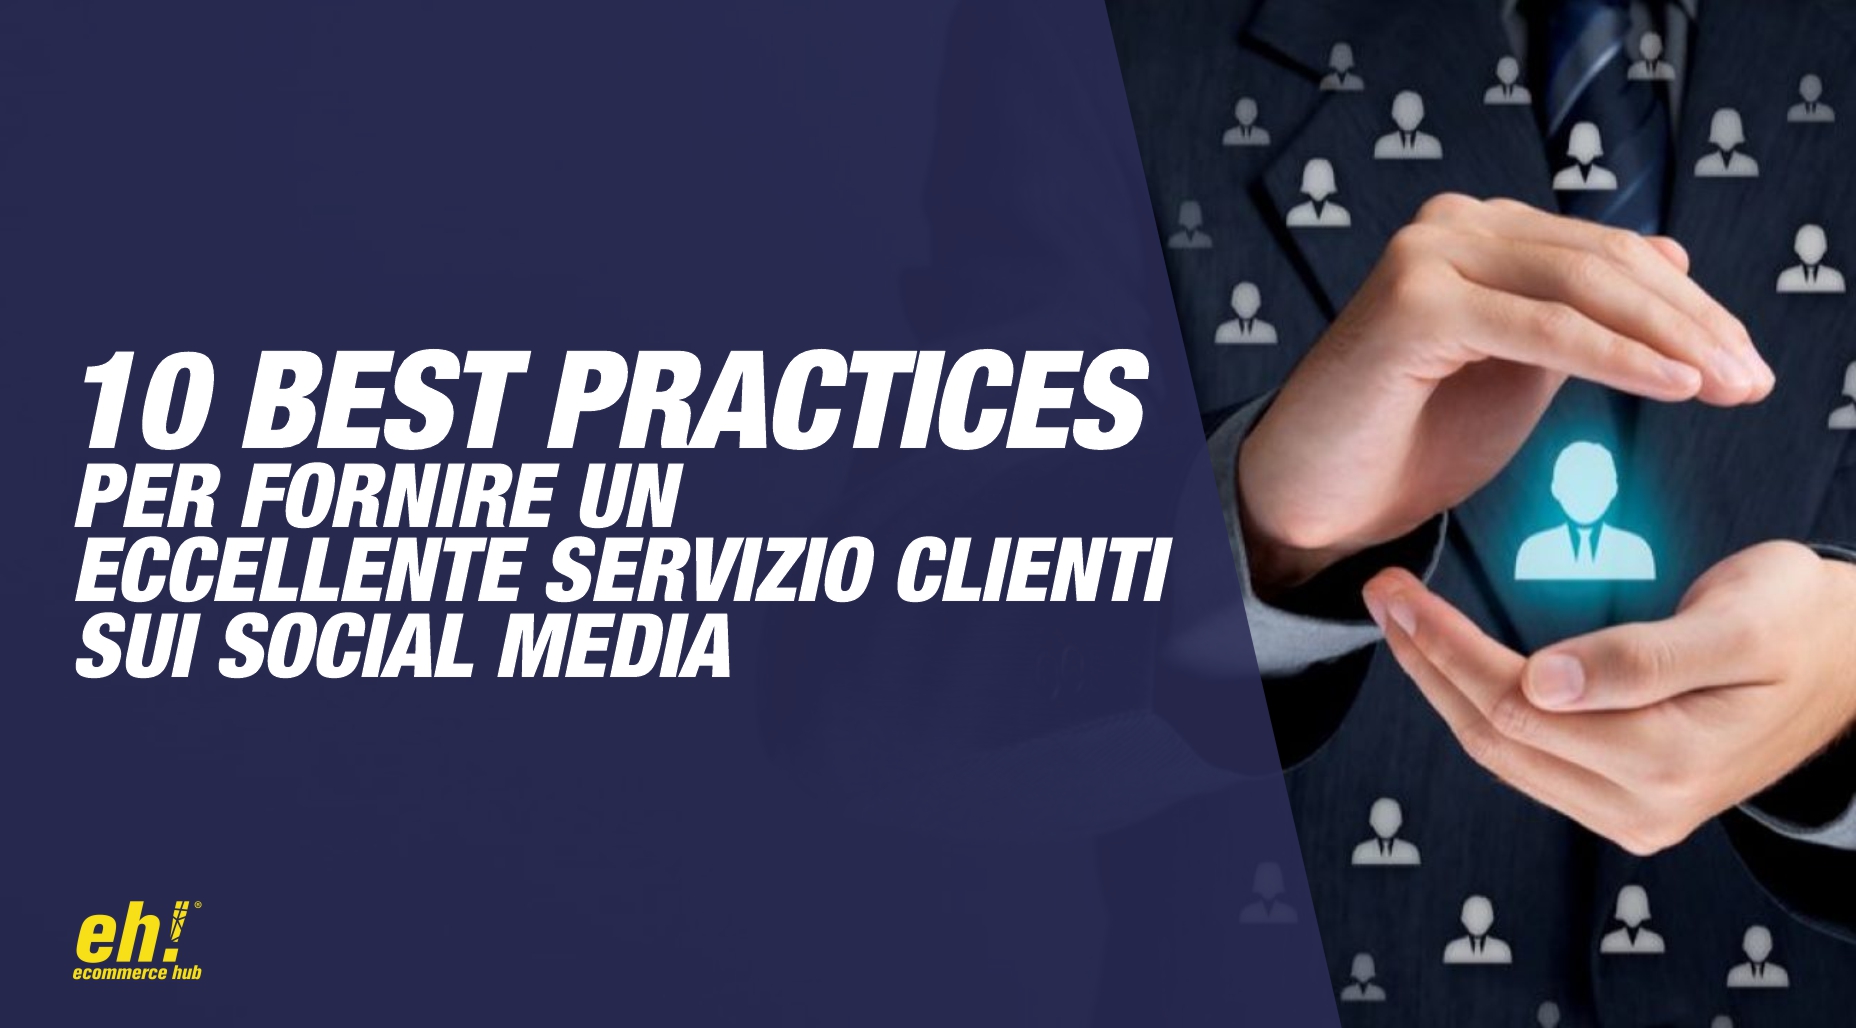 10 best practices per fornire un eccellente servizio clienti sui social media